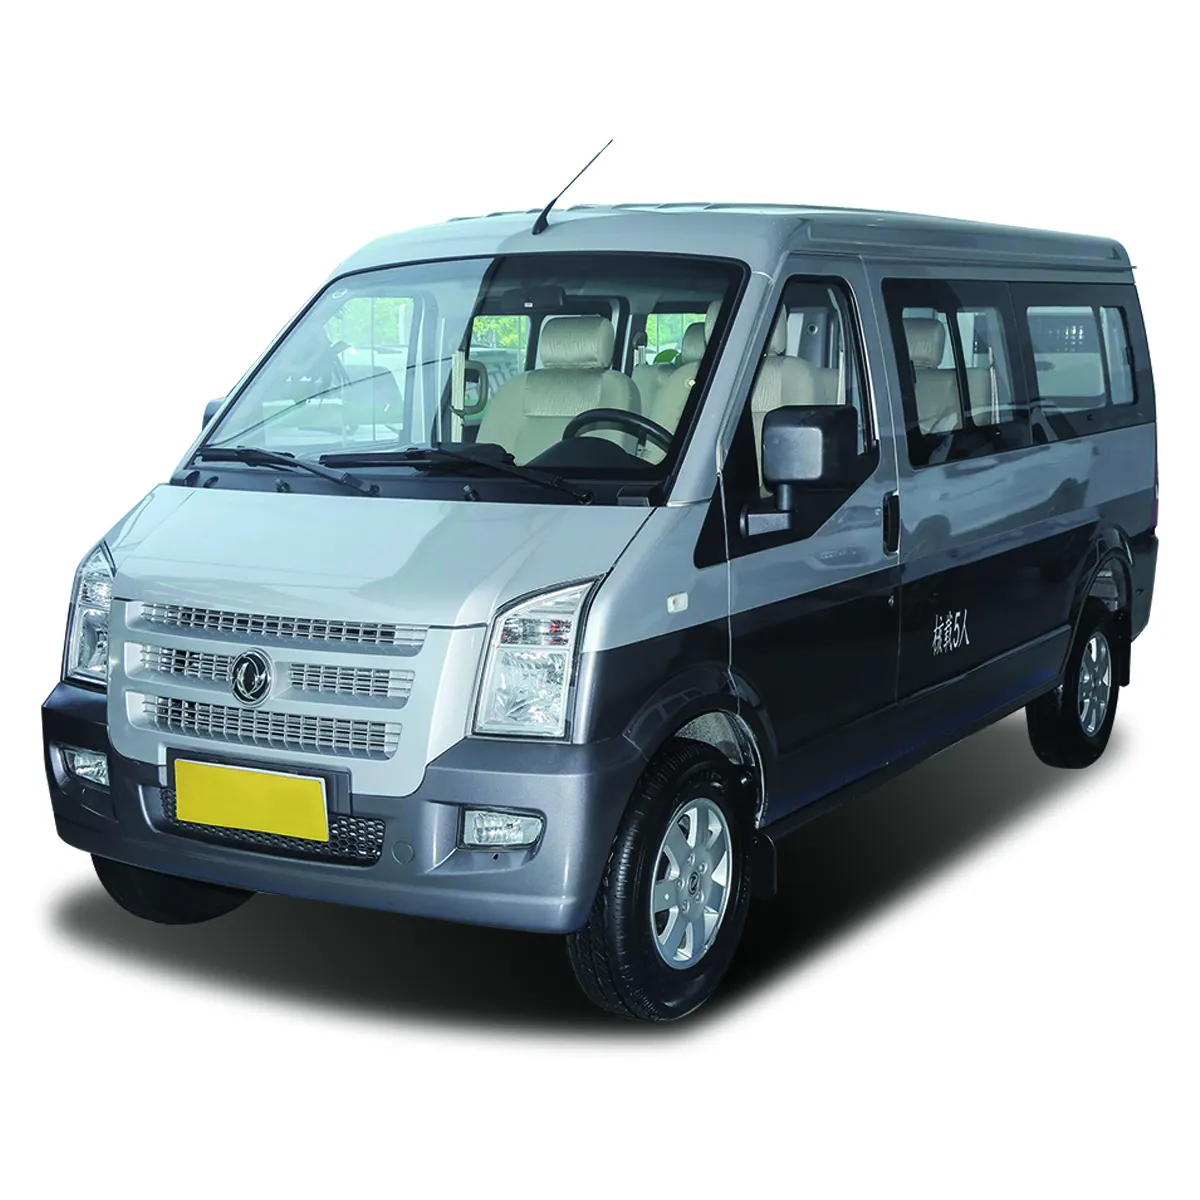 2024 Mới Đến Dfsk C37 Mini Hành Khách Van Dongfeng Xe C37 Dfsk C37 Mini Xe Buýt Van Hàng Hóa 4 Cửa 5/7 Đặt 1.5L Xăng Xe